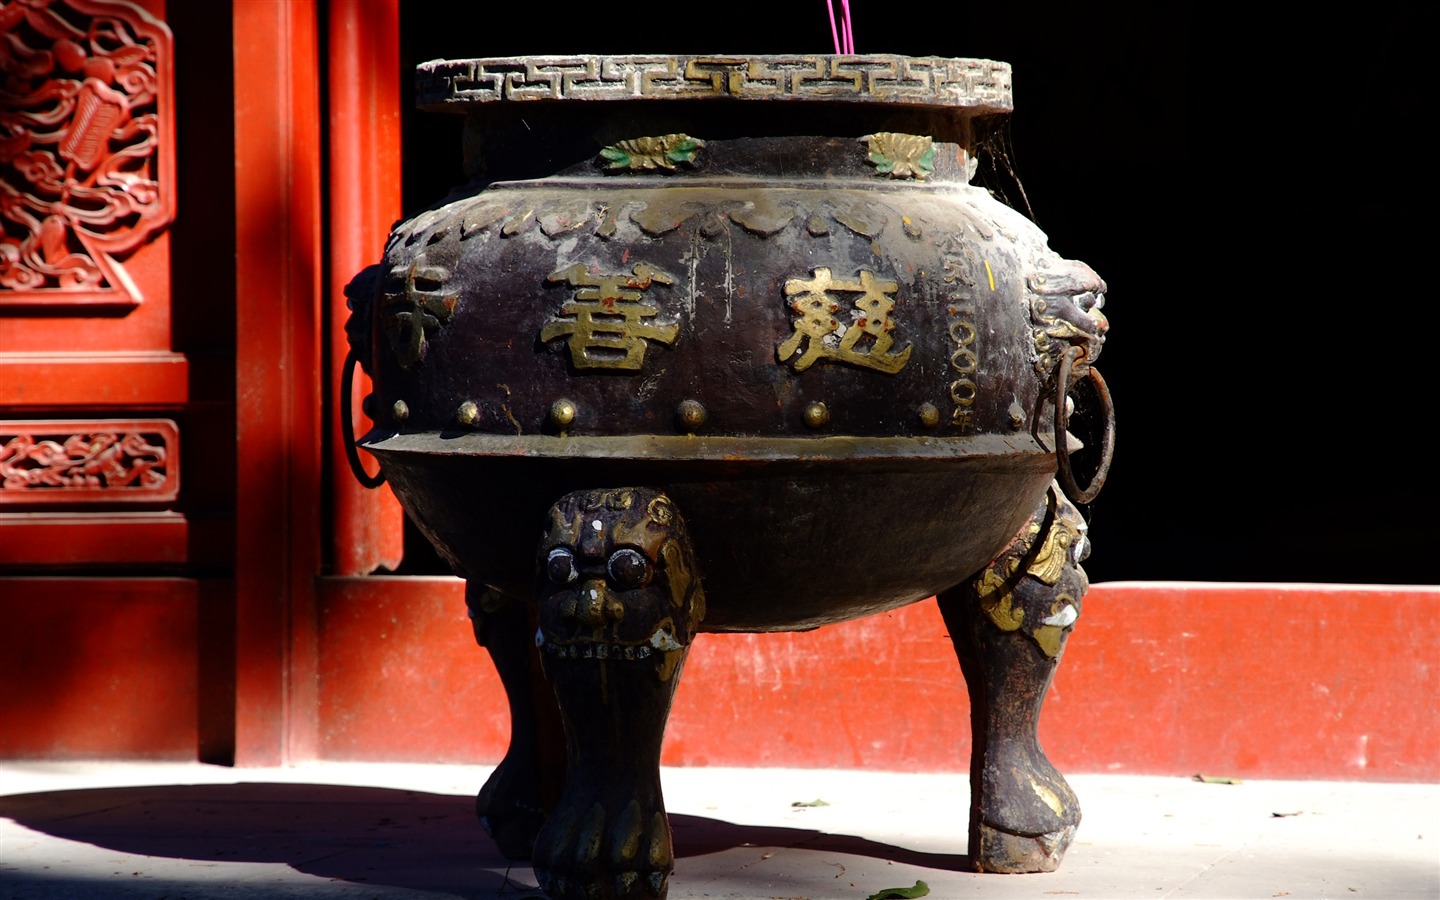 チャリティー寺Jingxiのモニュメント (鉄筋の作品) #8 - 1440x900